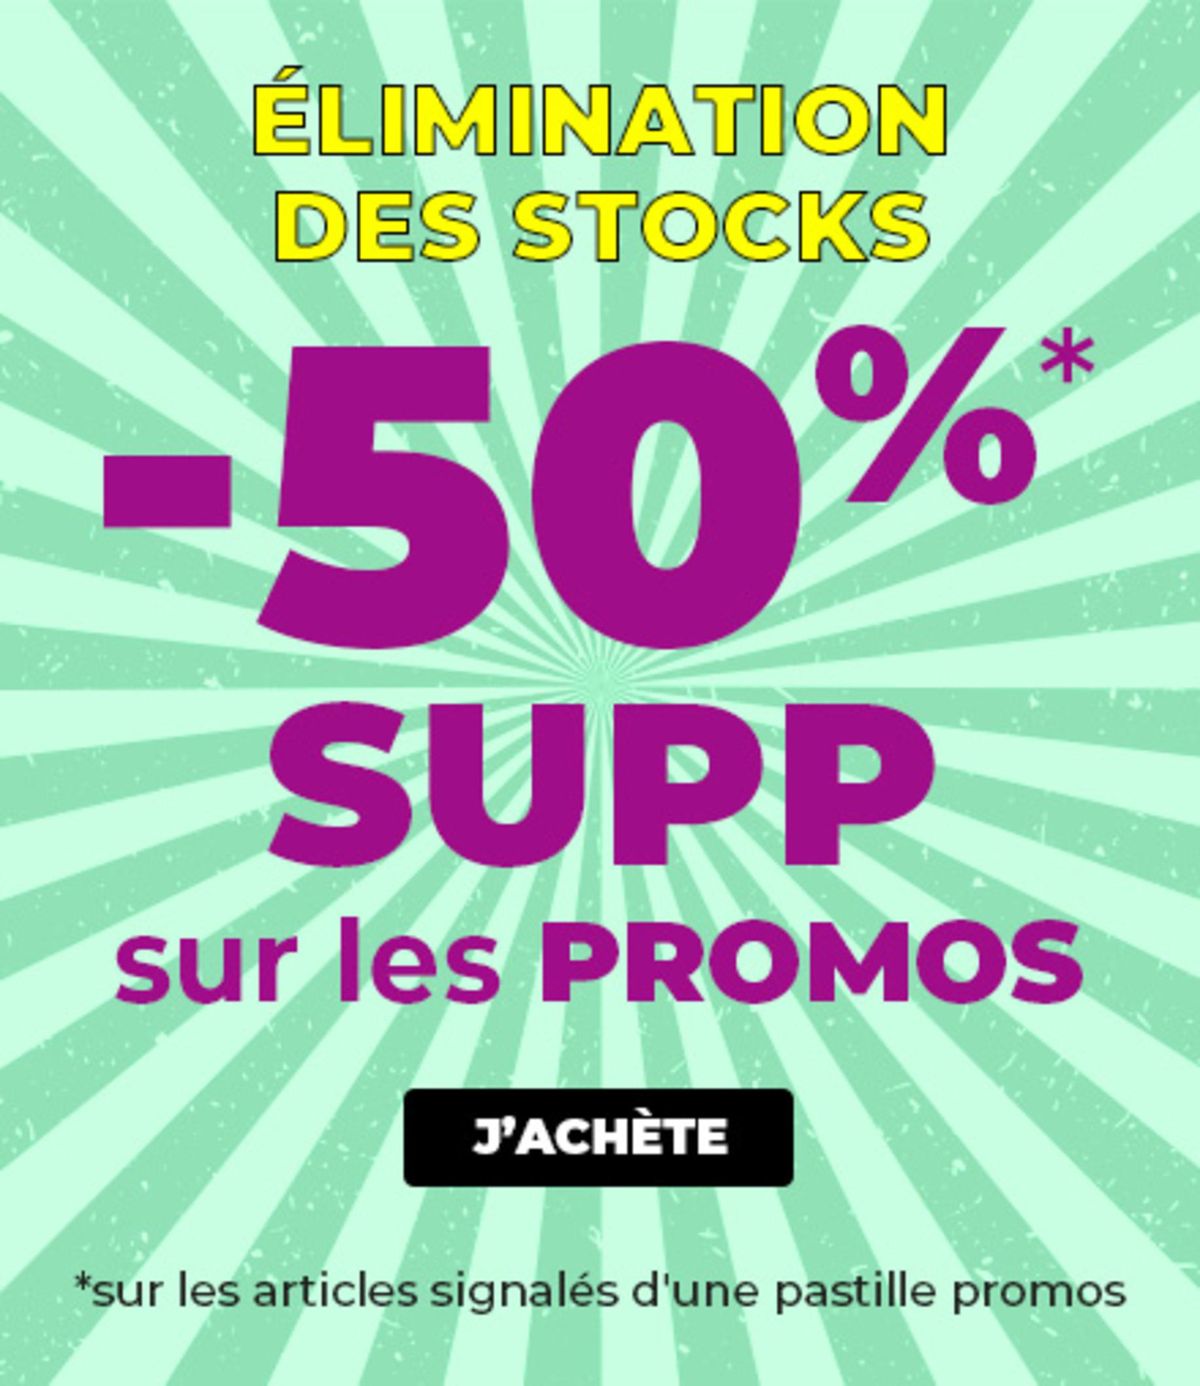 Catalogue Elimination ds stocks -50% supp sur les promos, page 00001